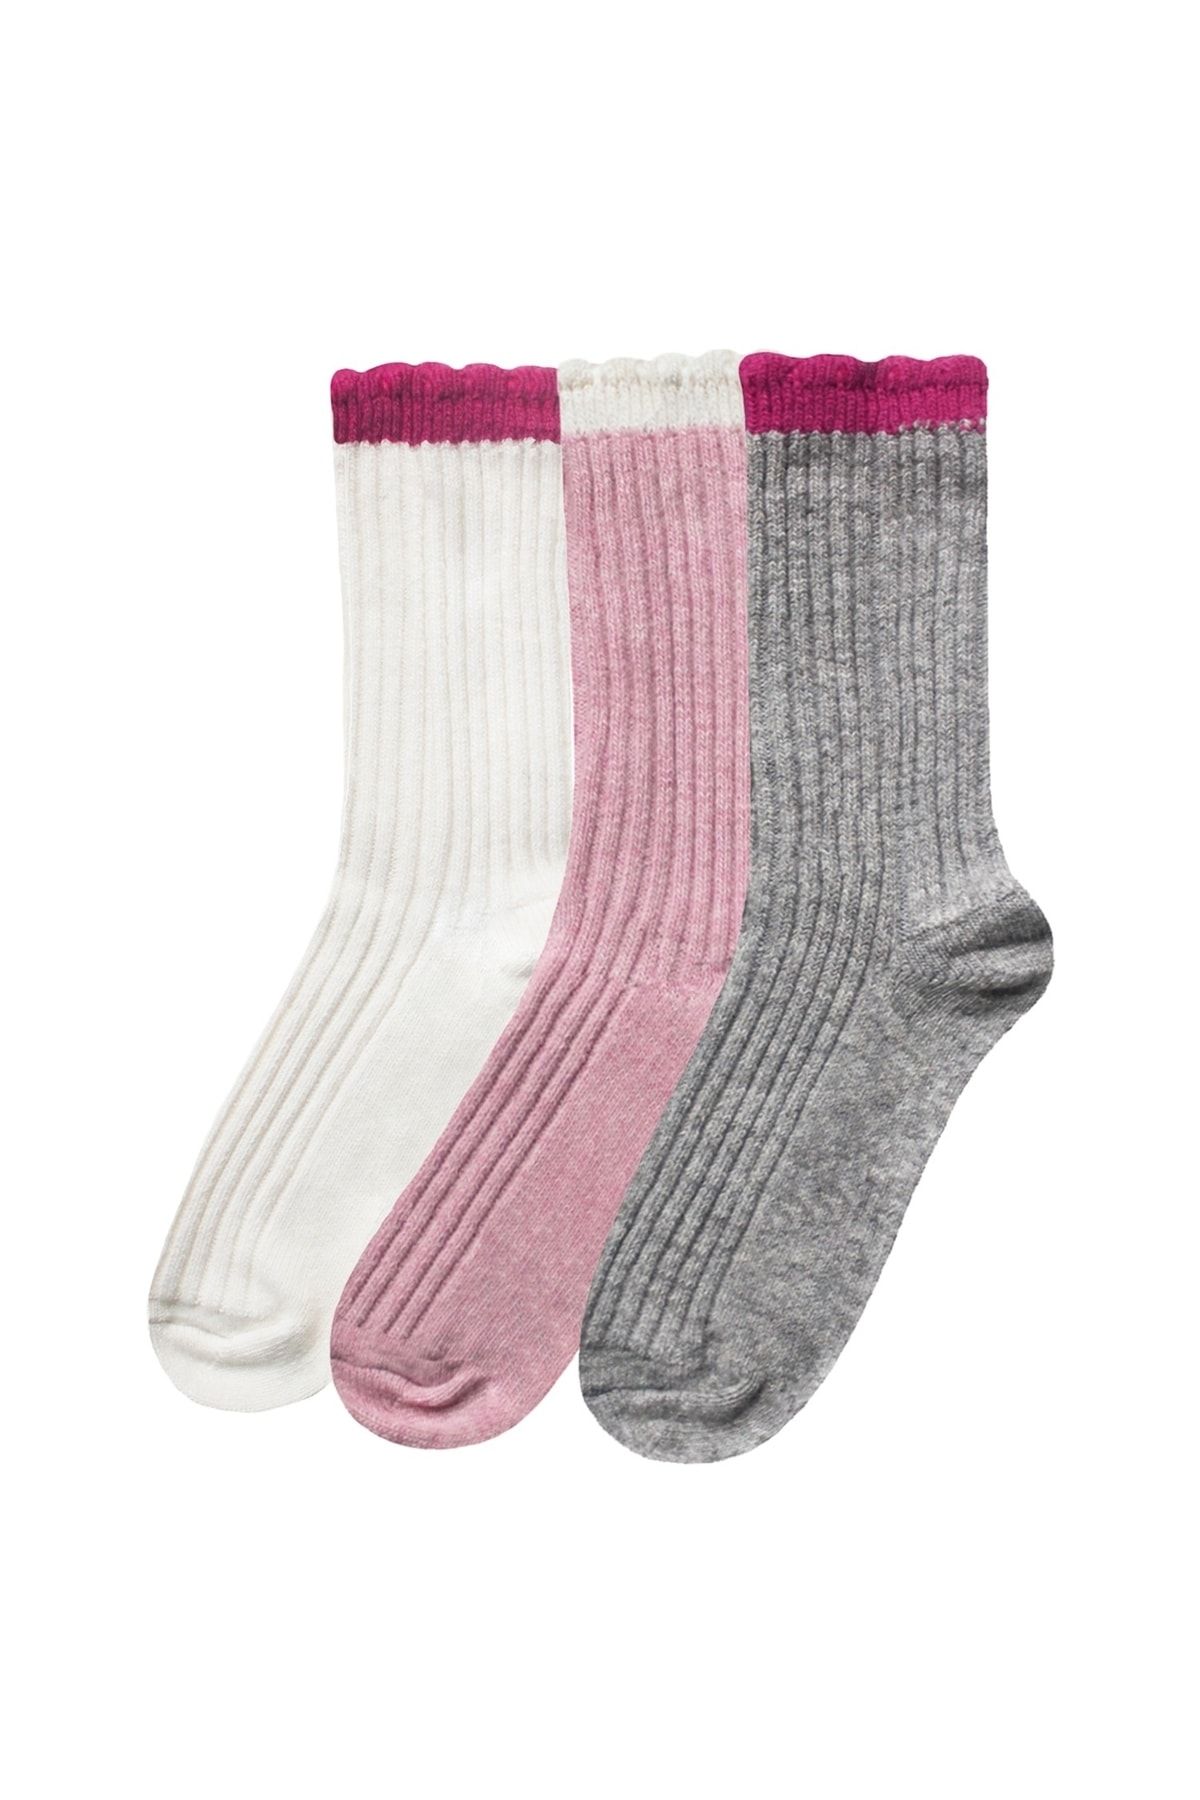 UNLIMITED LEGWEAR 3lü Kalın Kışlık Yün Ve Kaşmir Karışımlı Bileği Dilimli Kadın Çorap Seti